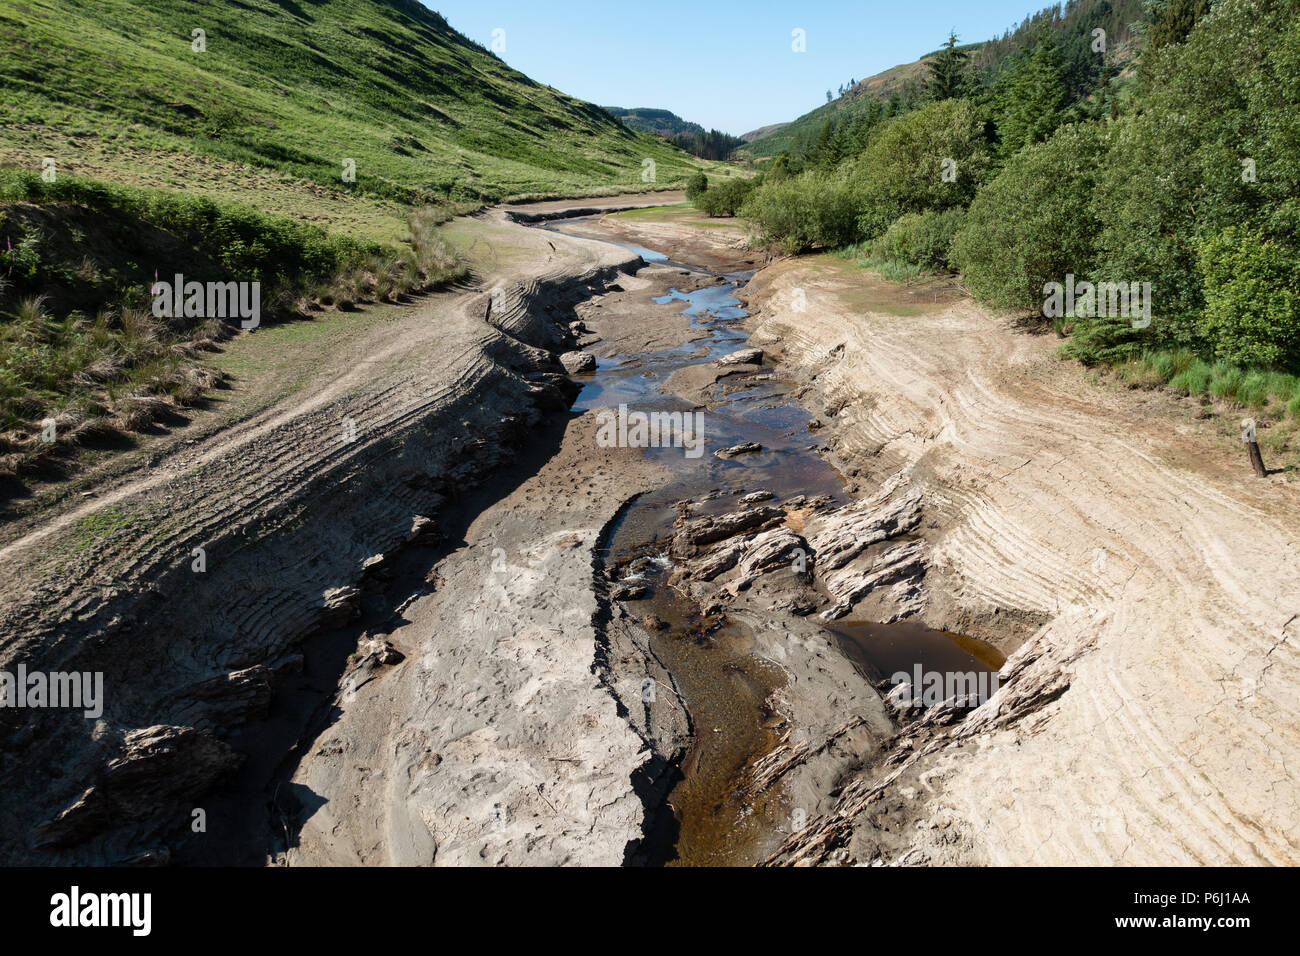 Lit de rivière à sec dans le cours supérieur de la rivière Towy, Pays de Galles, 29 juin, 2018 Banque D'Images